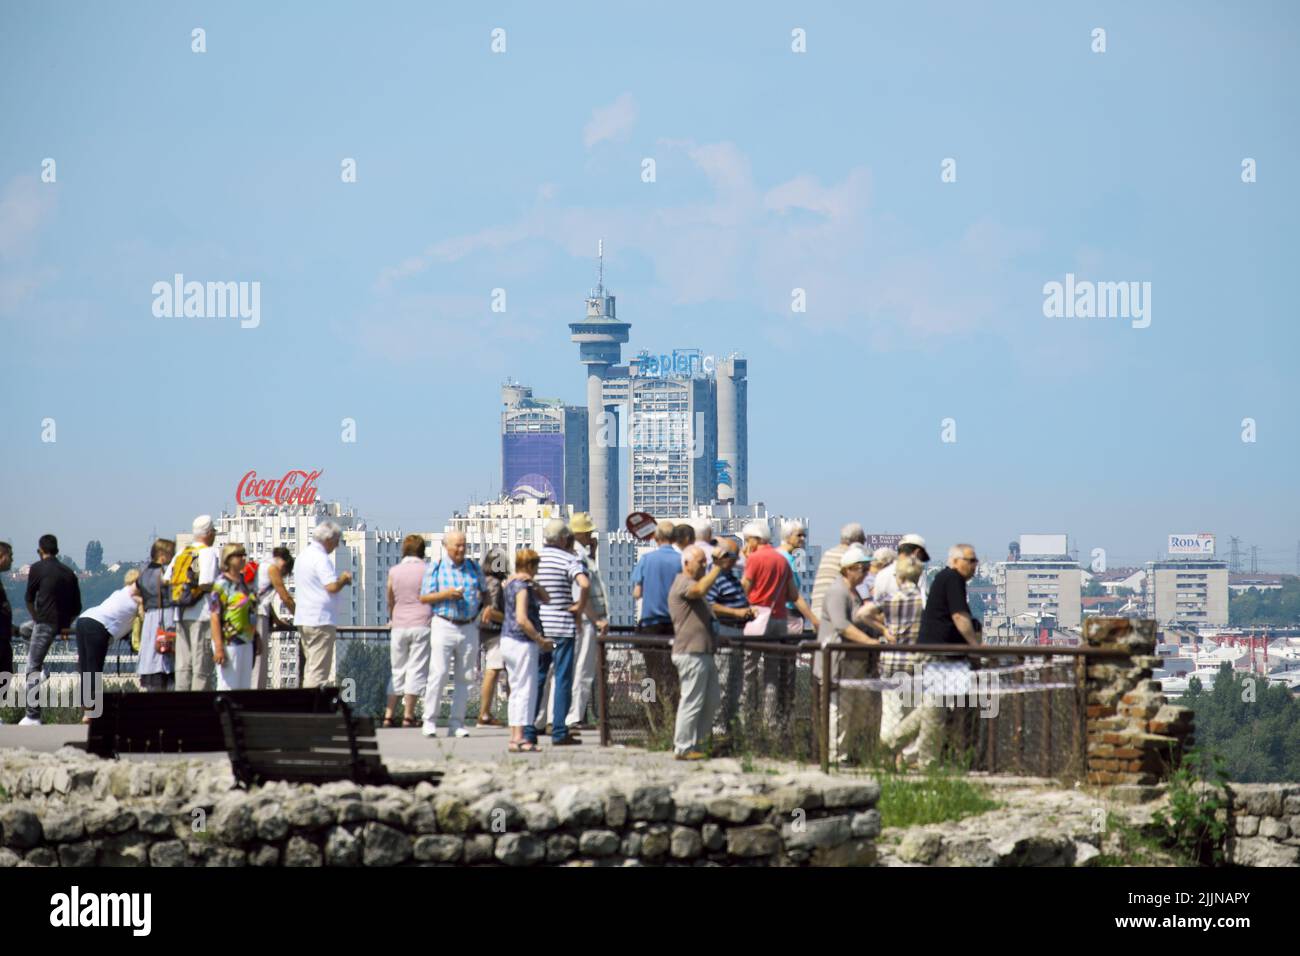 Tourgruppe in Belgrad, der Hauptstadt Serbiens, konzentriert sich auf den Hintergrund von Wolkenkratzern und blauem Himmel Stockfoto